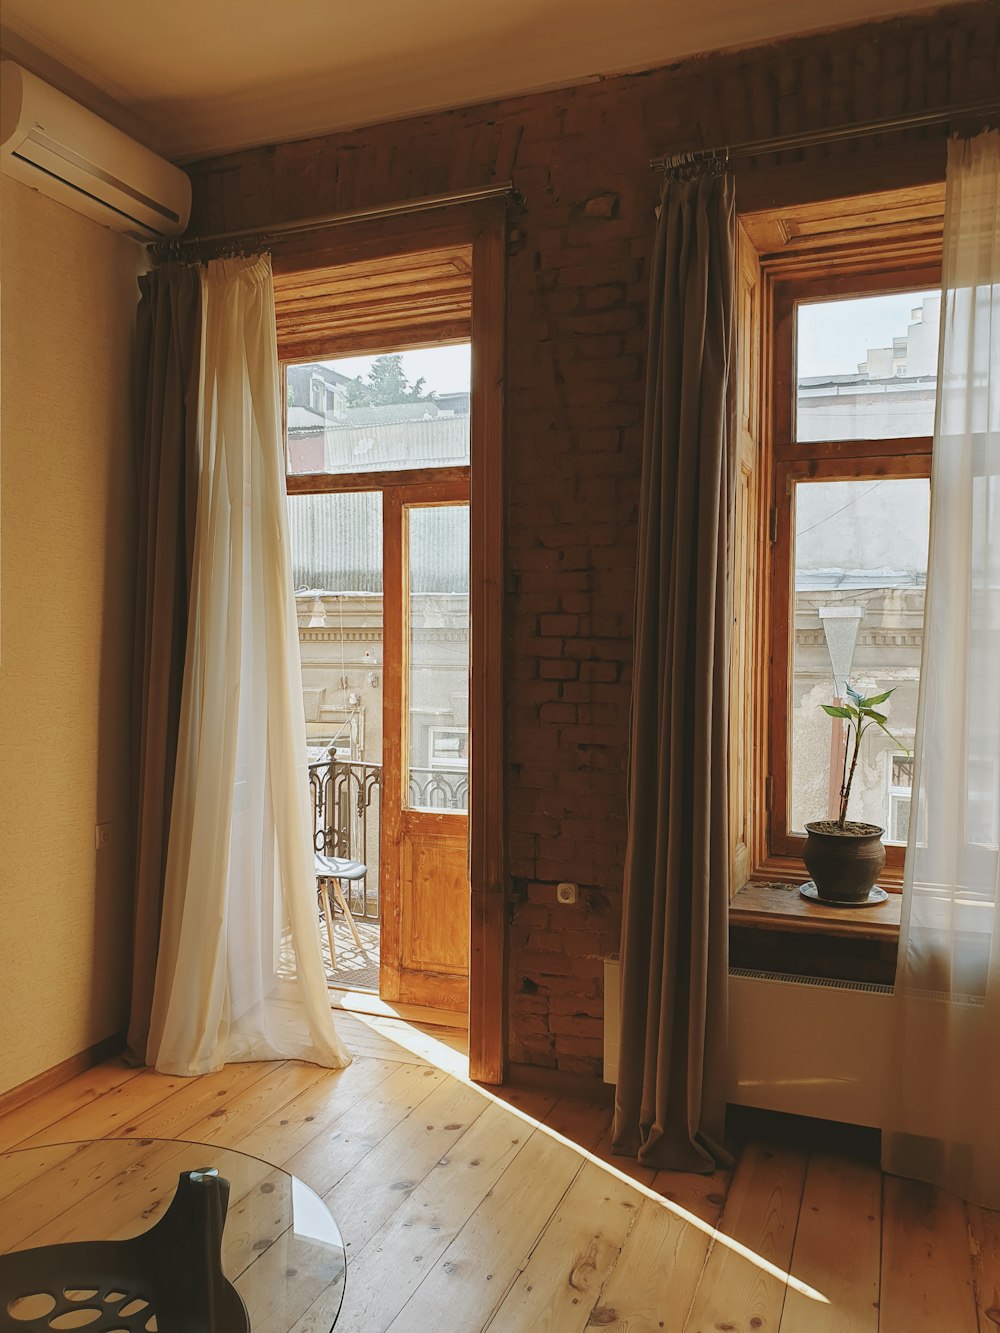 white window curtain near brown wooden door